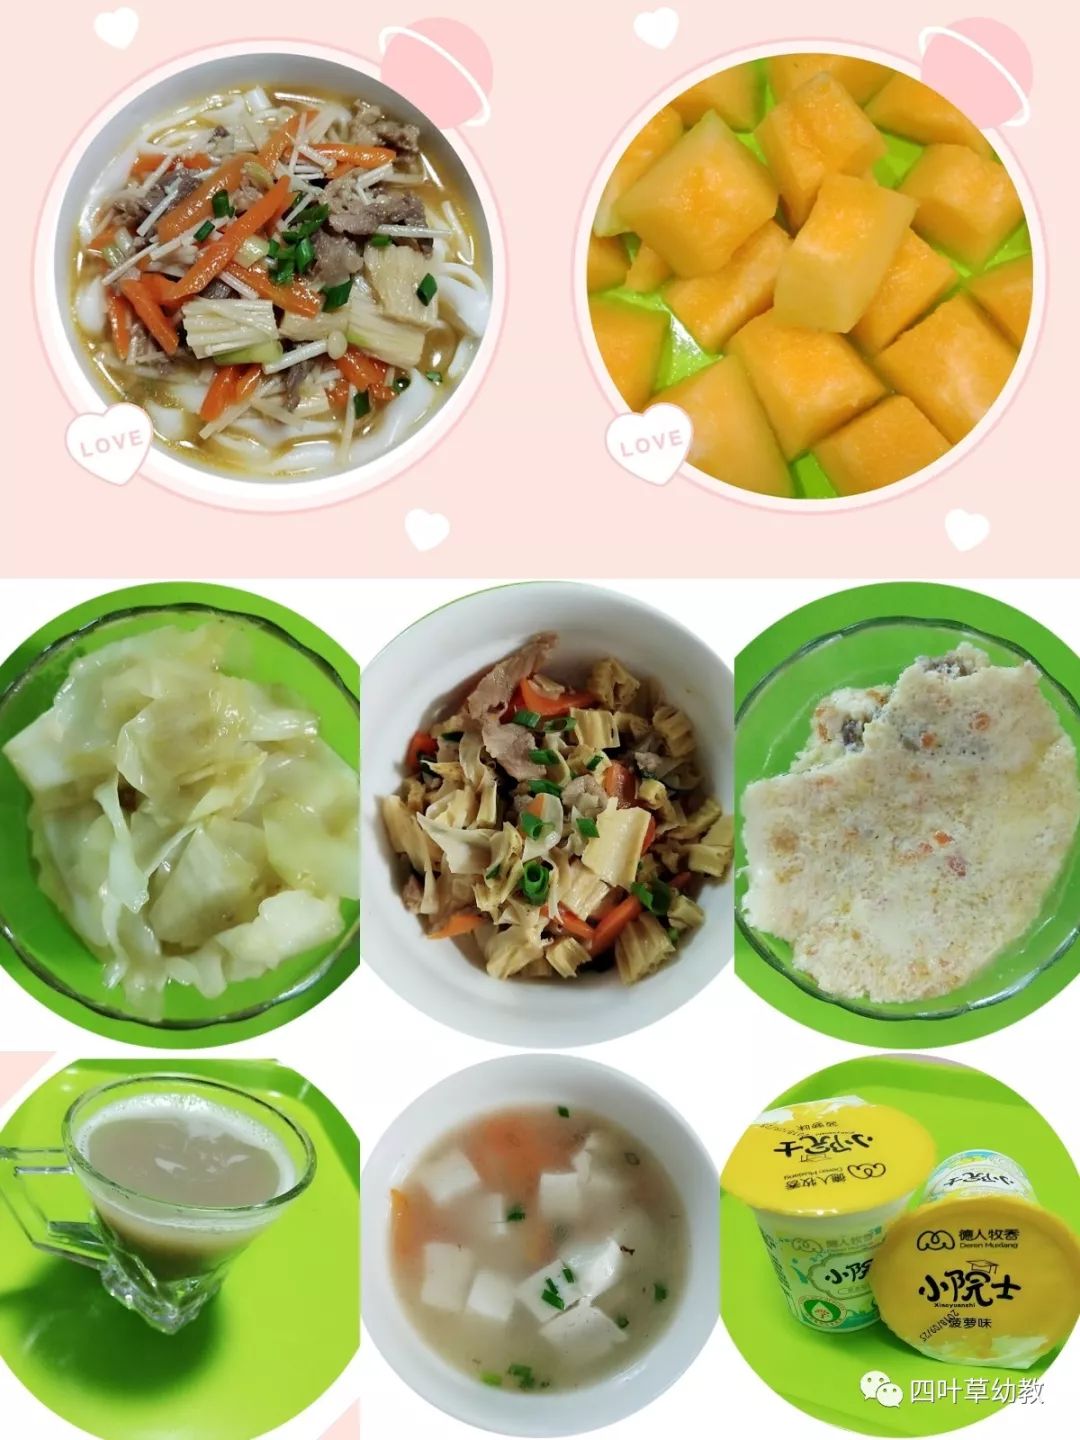 每周食谱 - 幼儿园 - 南京书人幼儿园